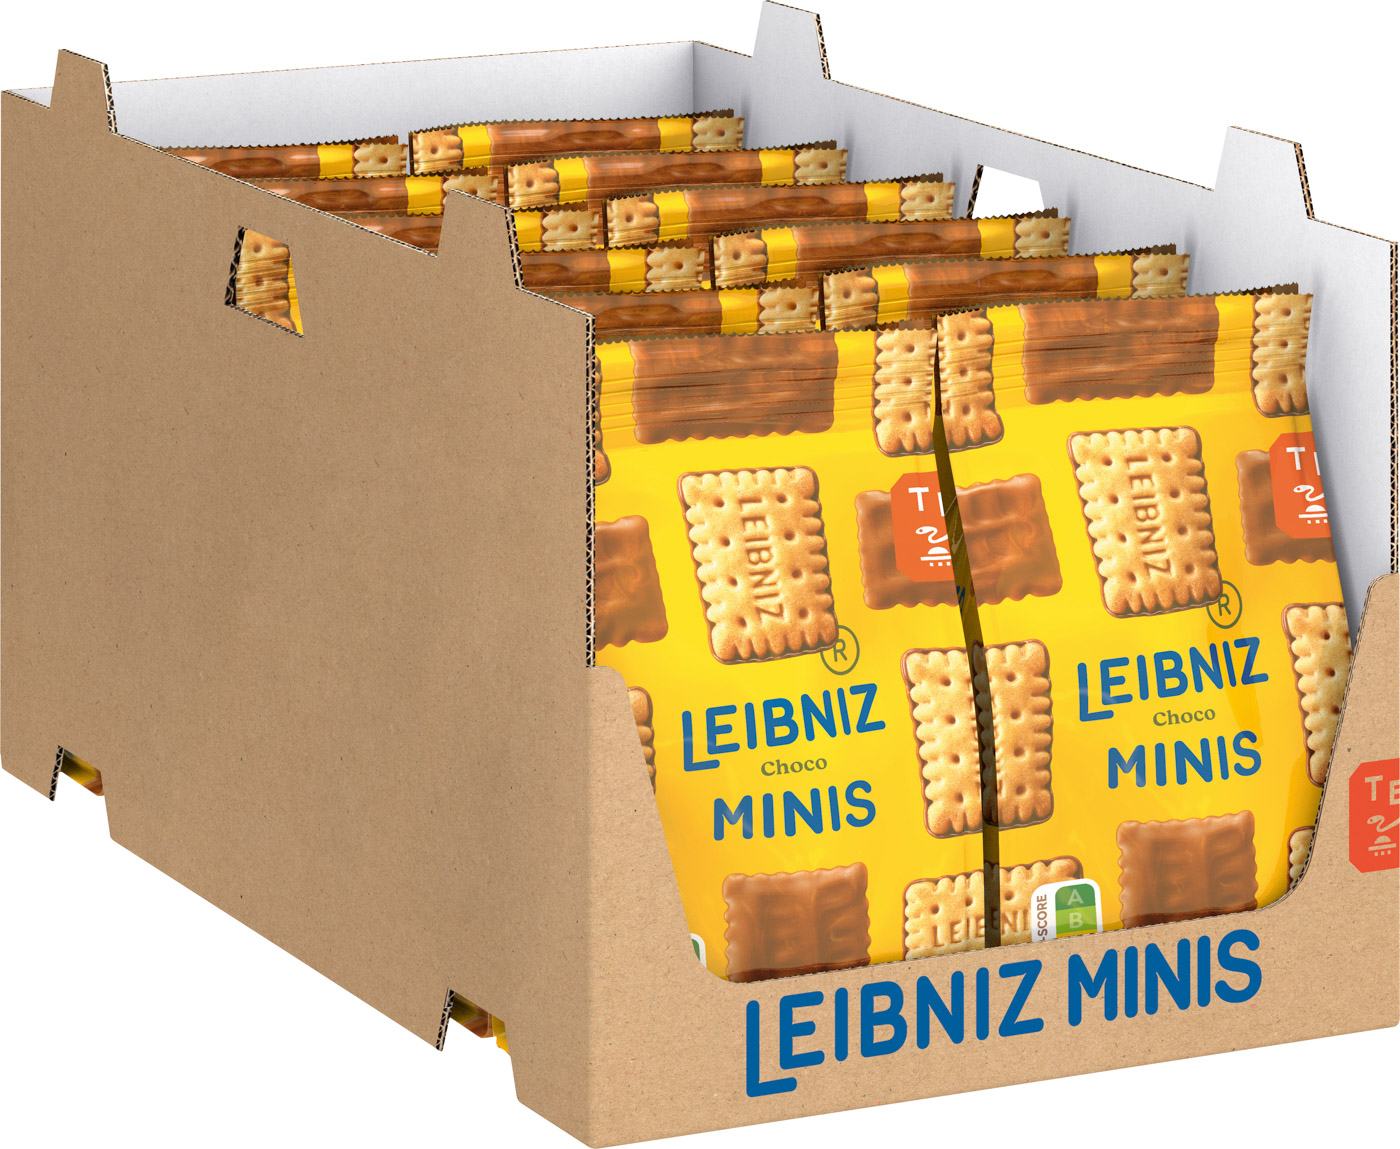 Bahlsen Leibniz Minis Choco Keks 125G